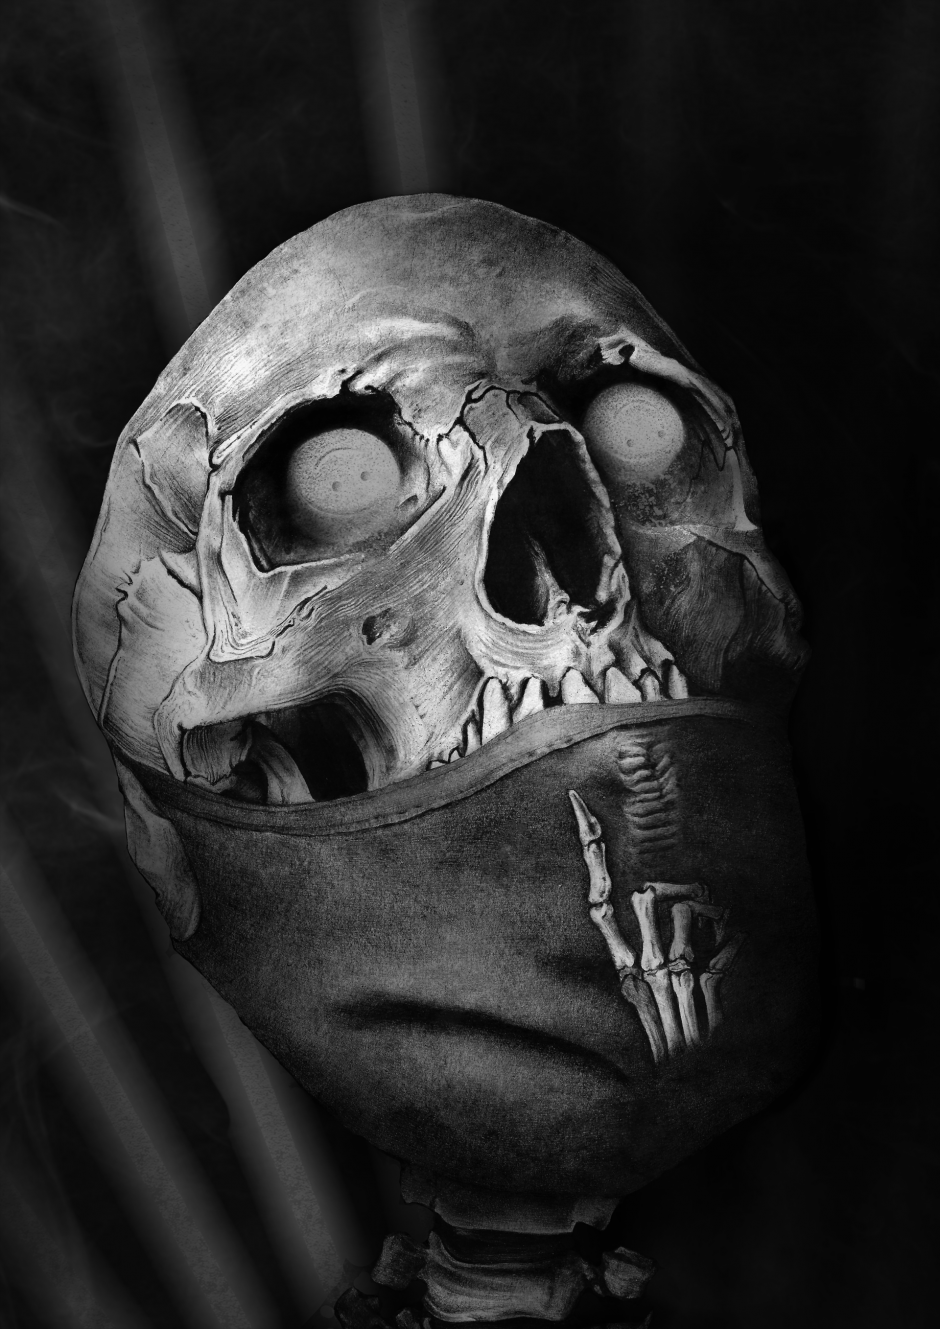 Manza April Darkart Ballpointpen Artist Illustration Silence Skull Mask Covid